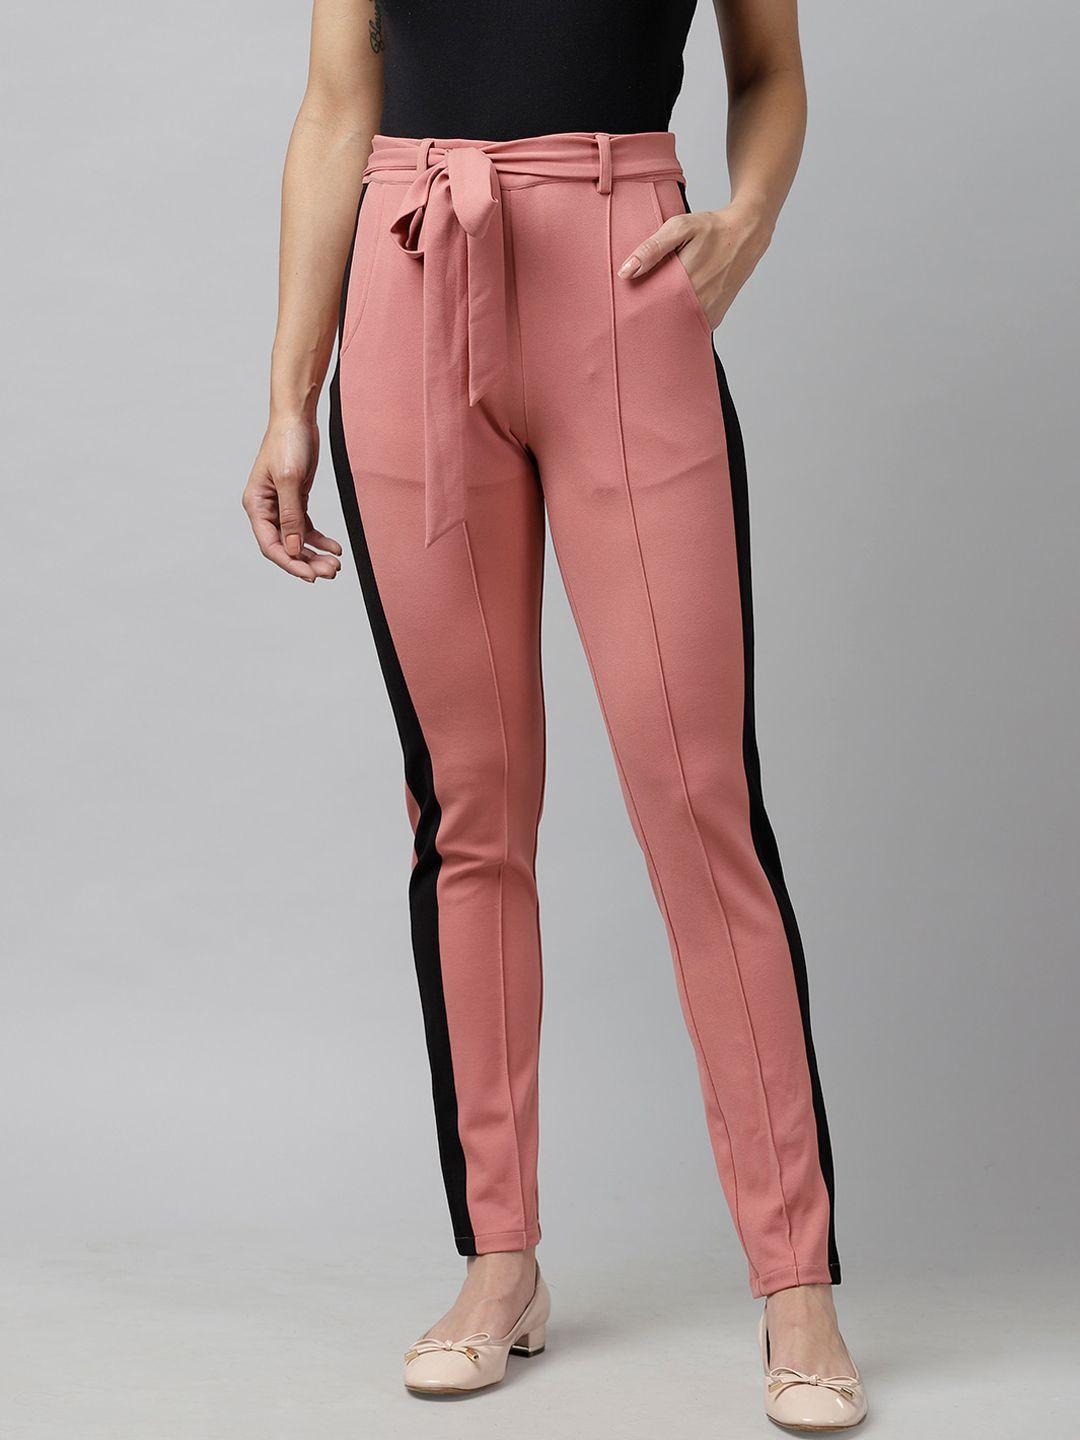 kassually women pink & black slim fit printed regular trousers